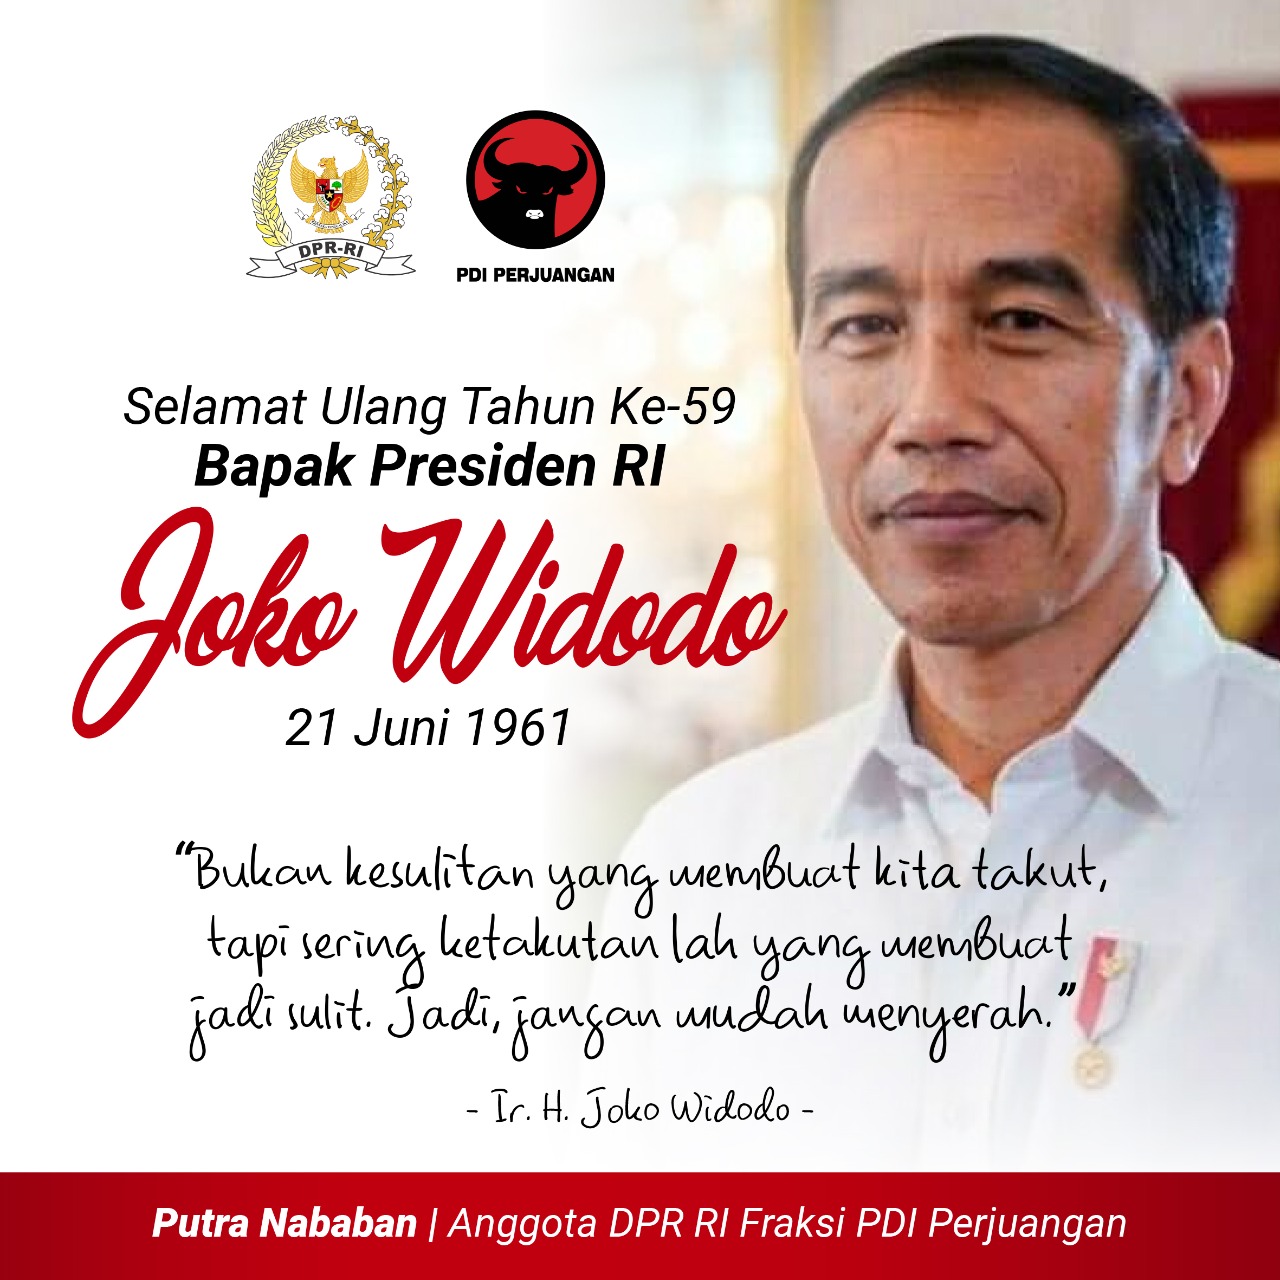 Ulang Tahun ke-59 Presiden RI Joko Widodo